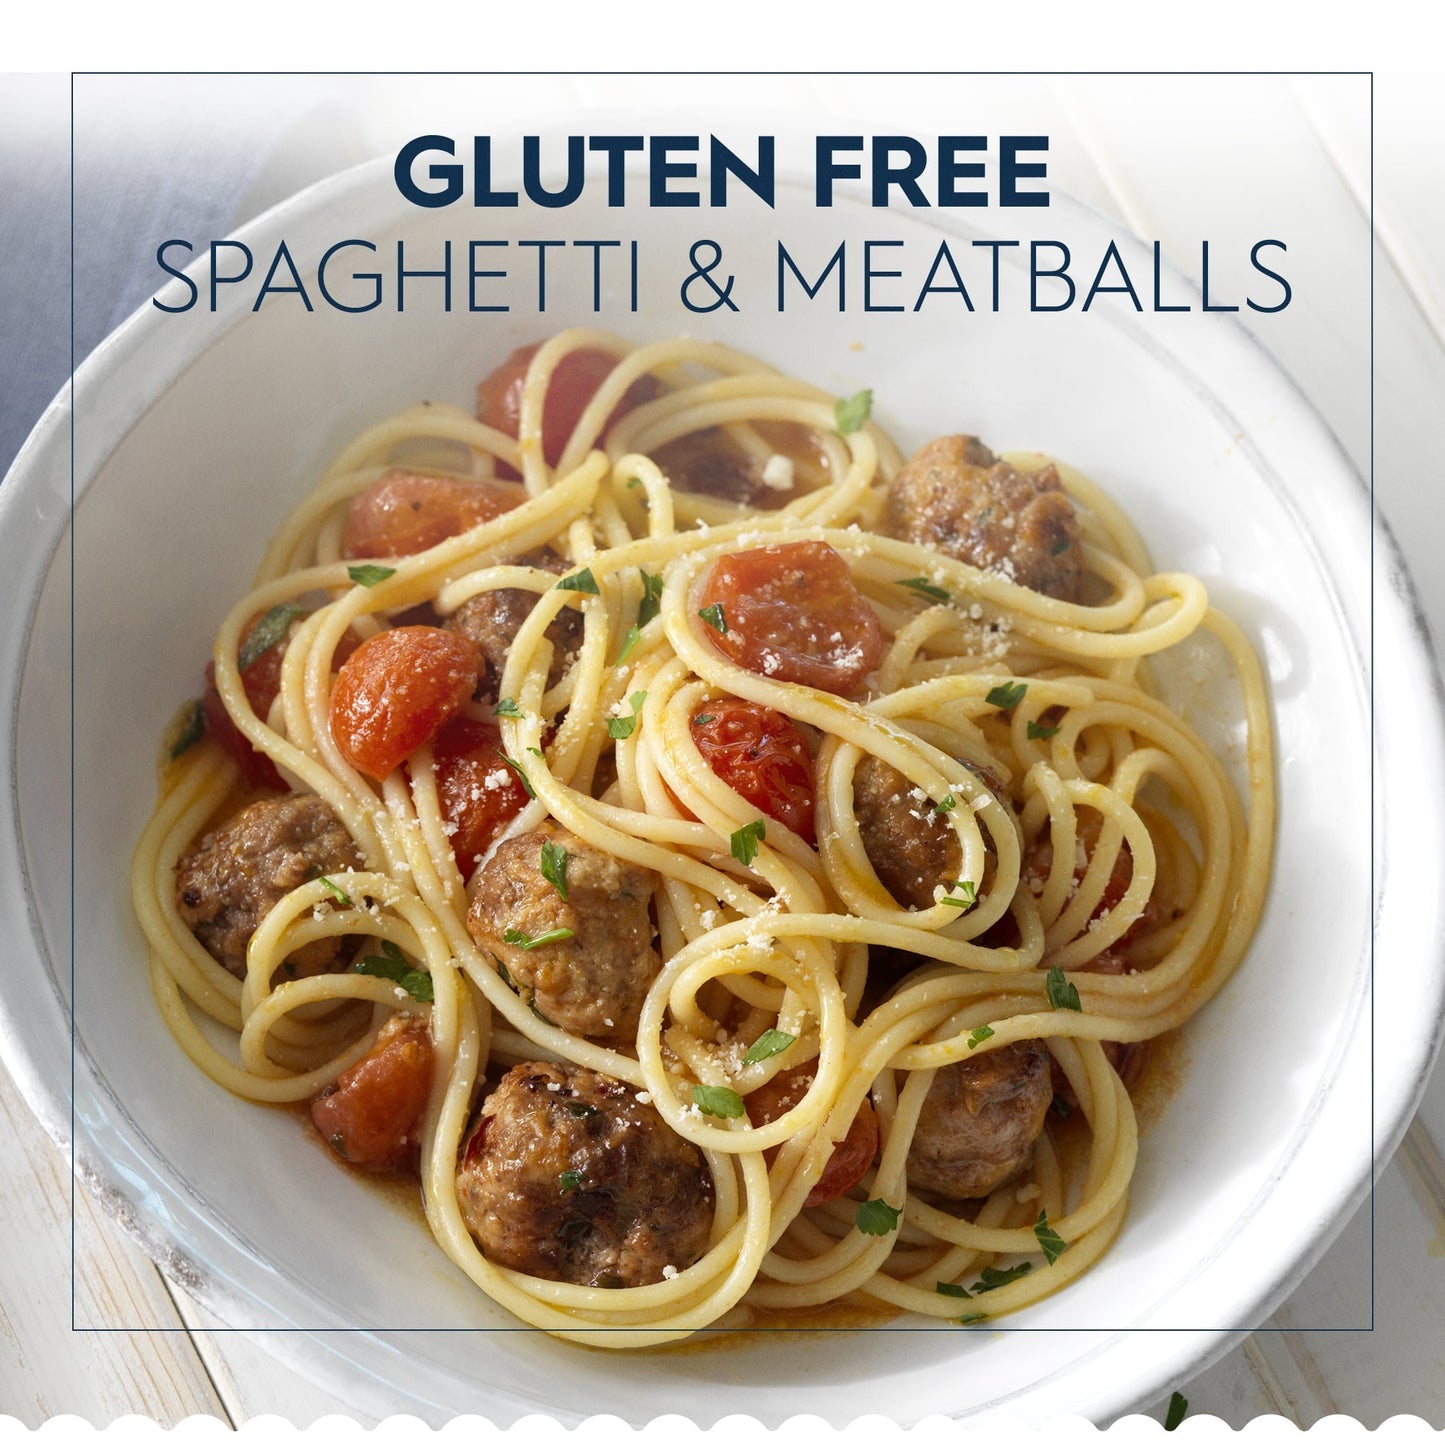 Barilla Gluten Free Spaghetti Pasta, 12 oz